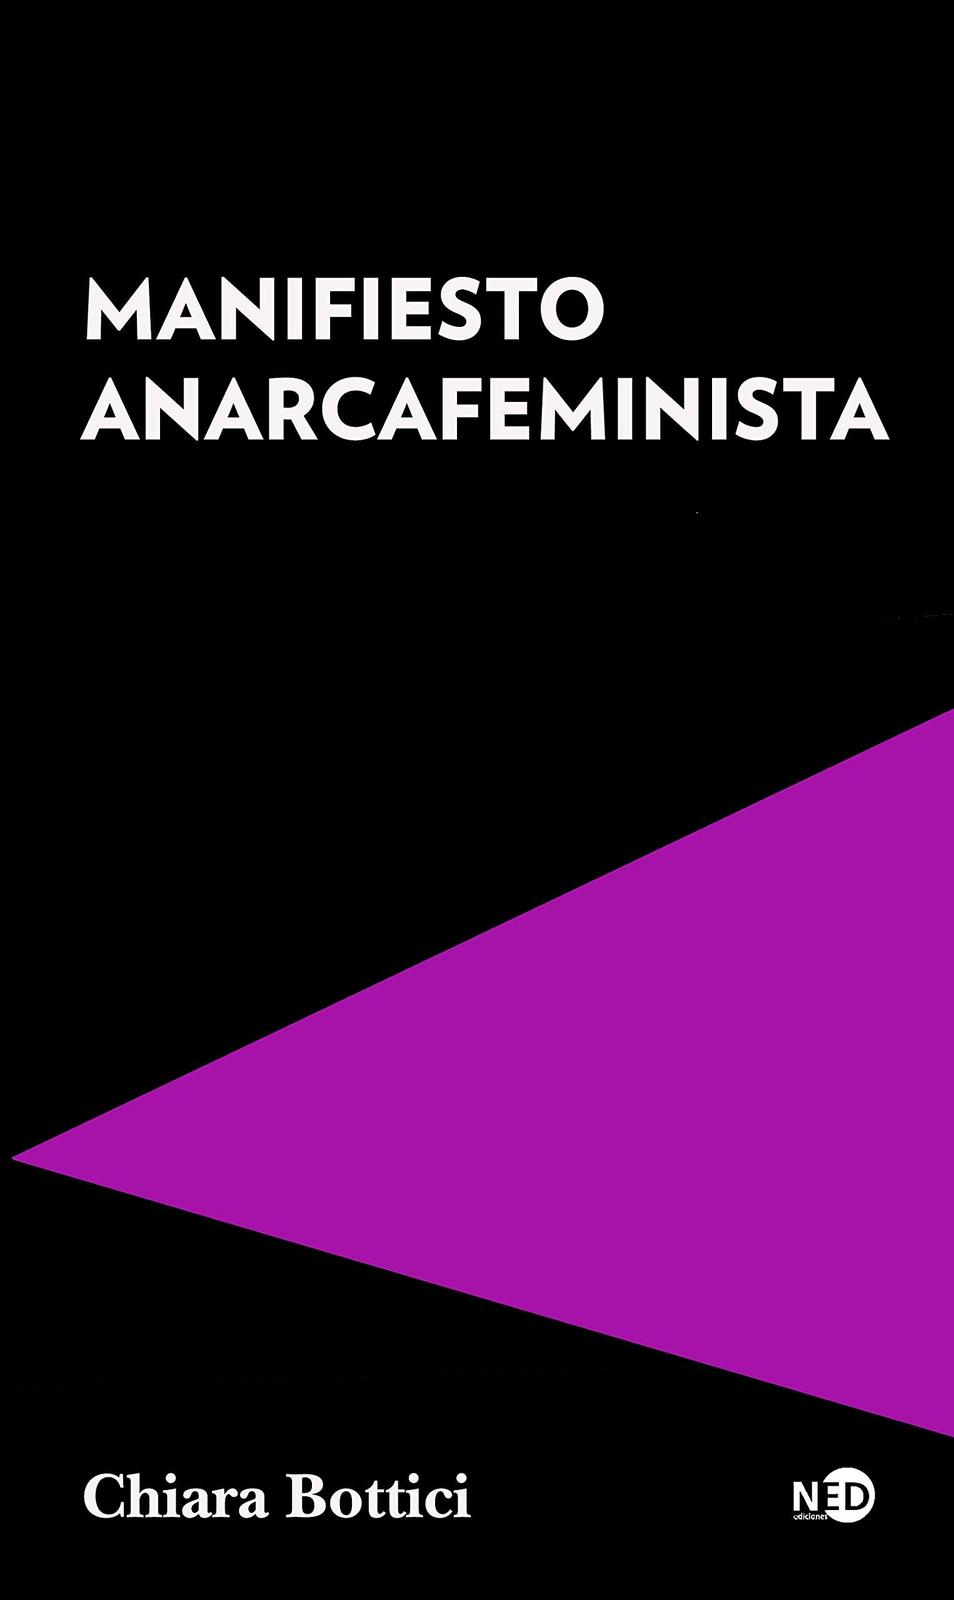 Chiara Bottici: Manifiesto Anarcafeminista (Spanish language, 2021, NED Ediciones)